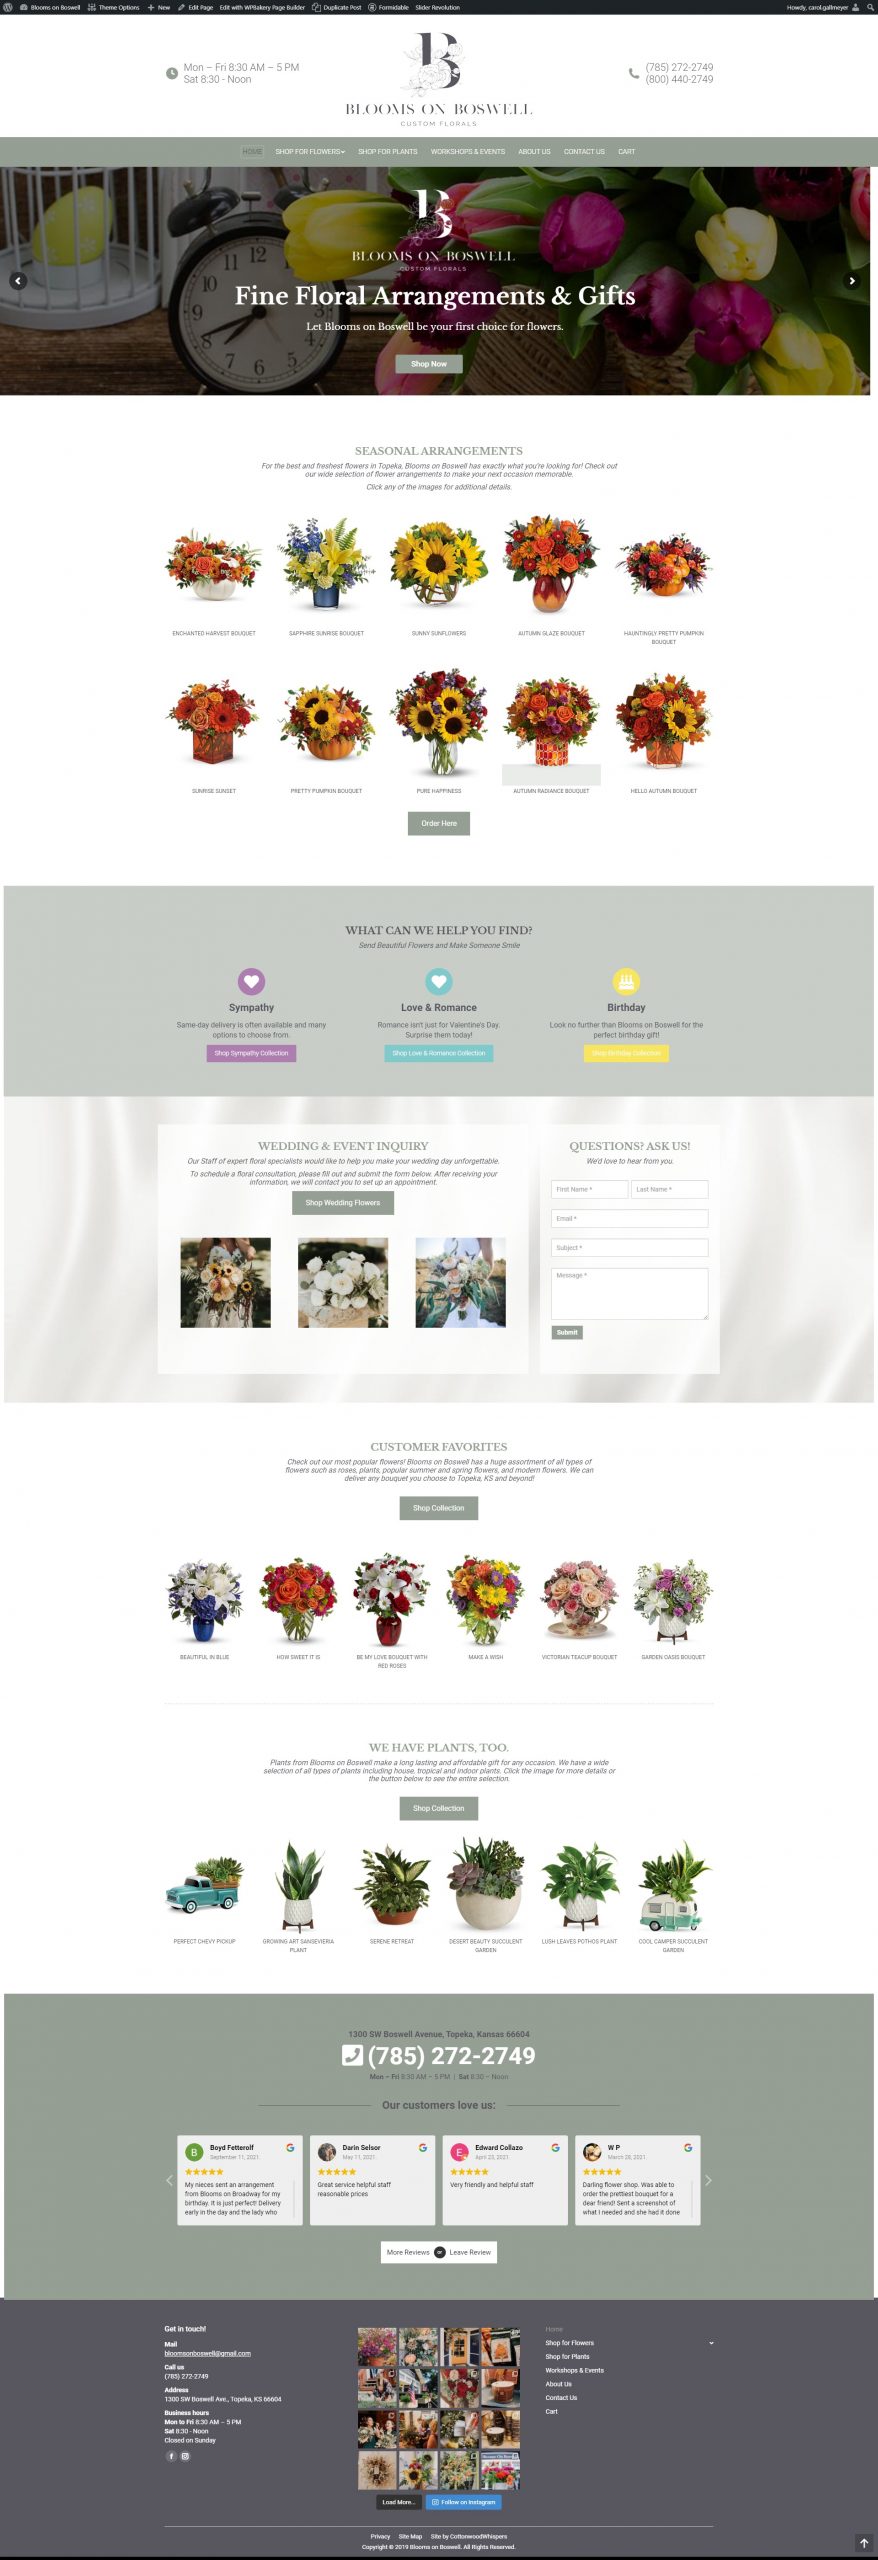 desktop version of website redesign custom floral shop